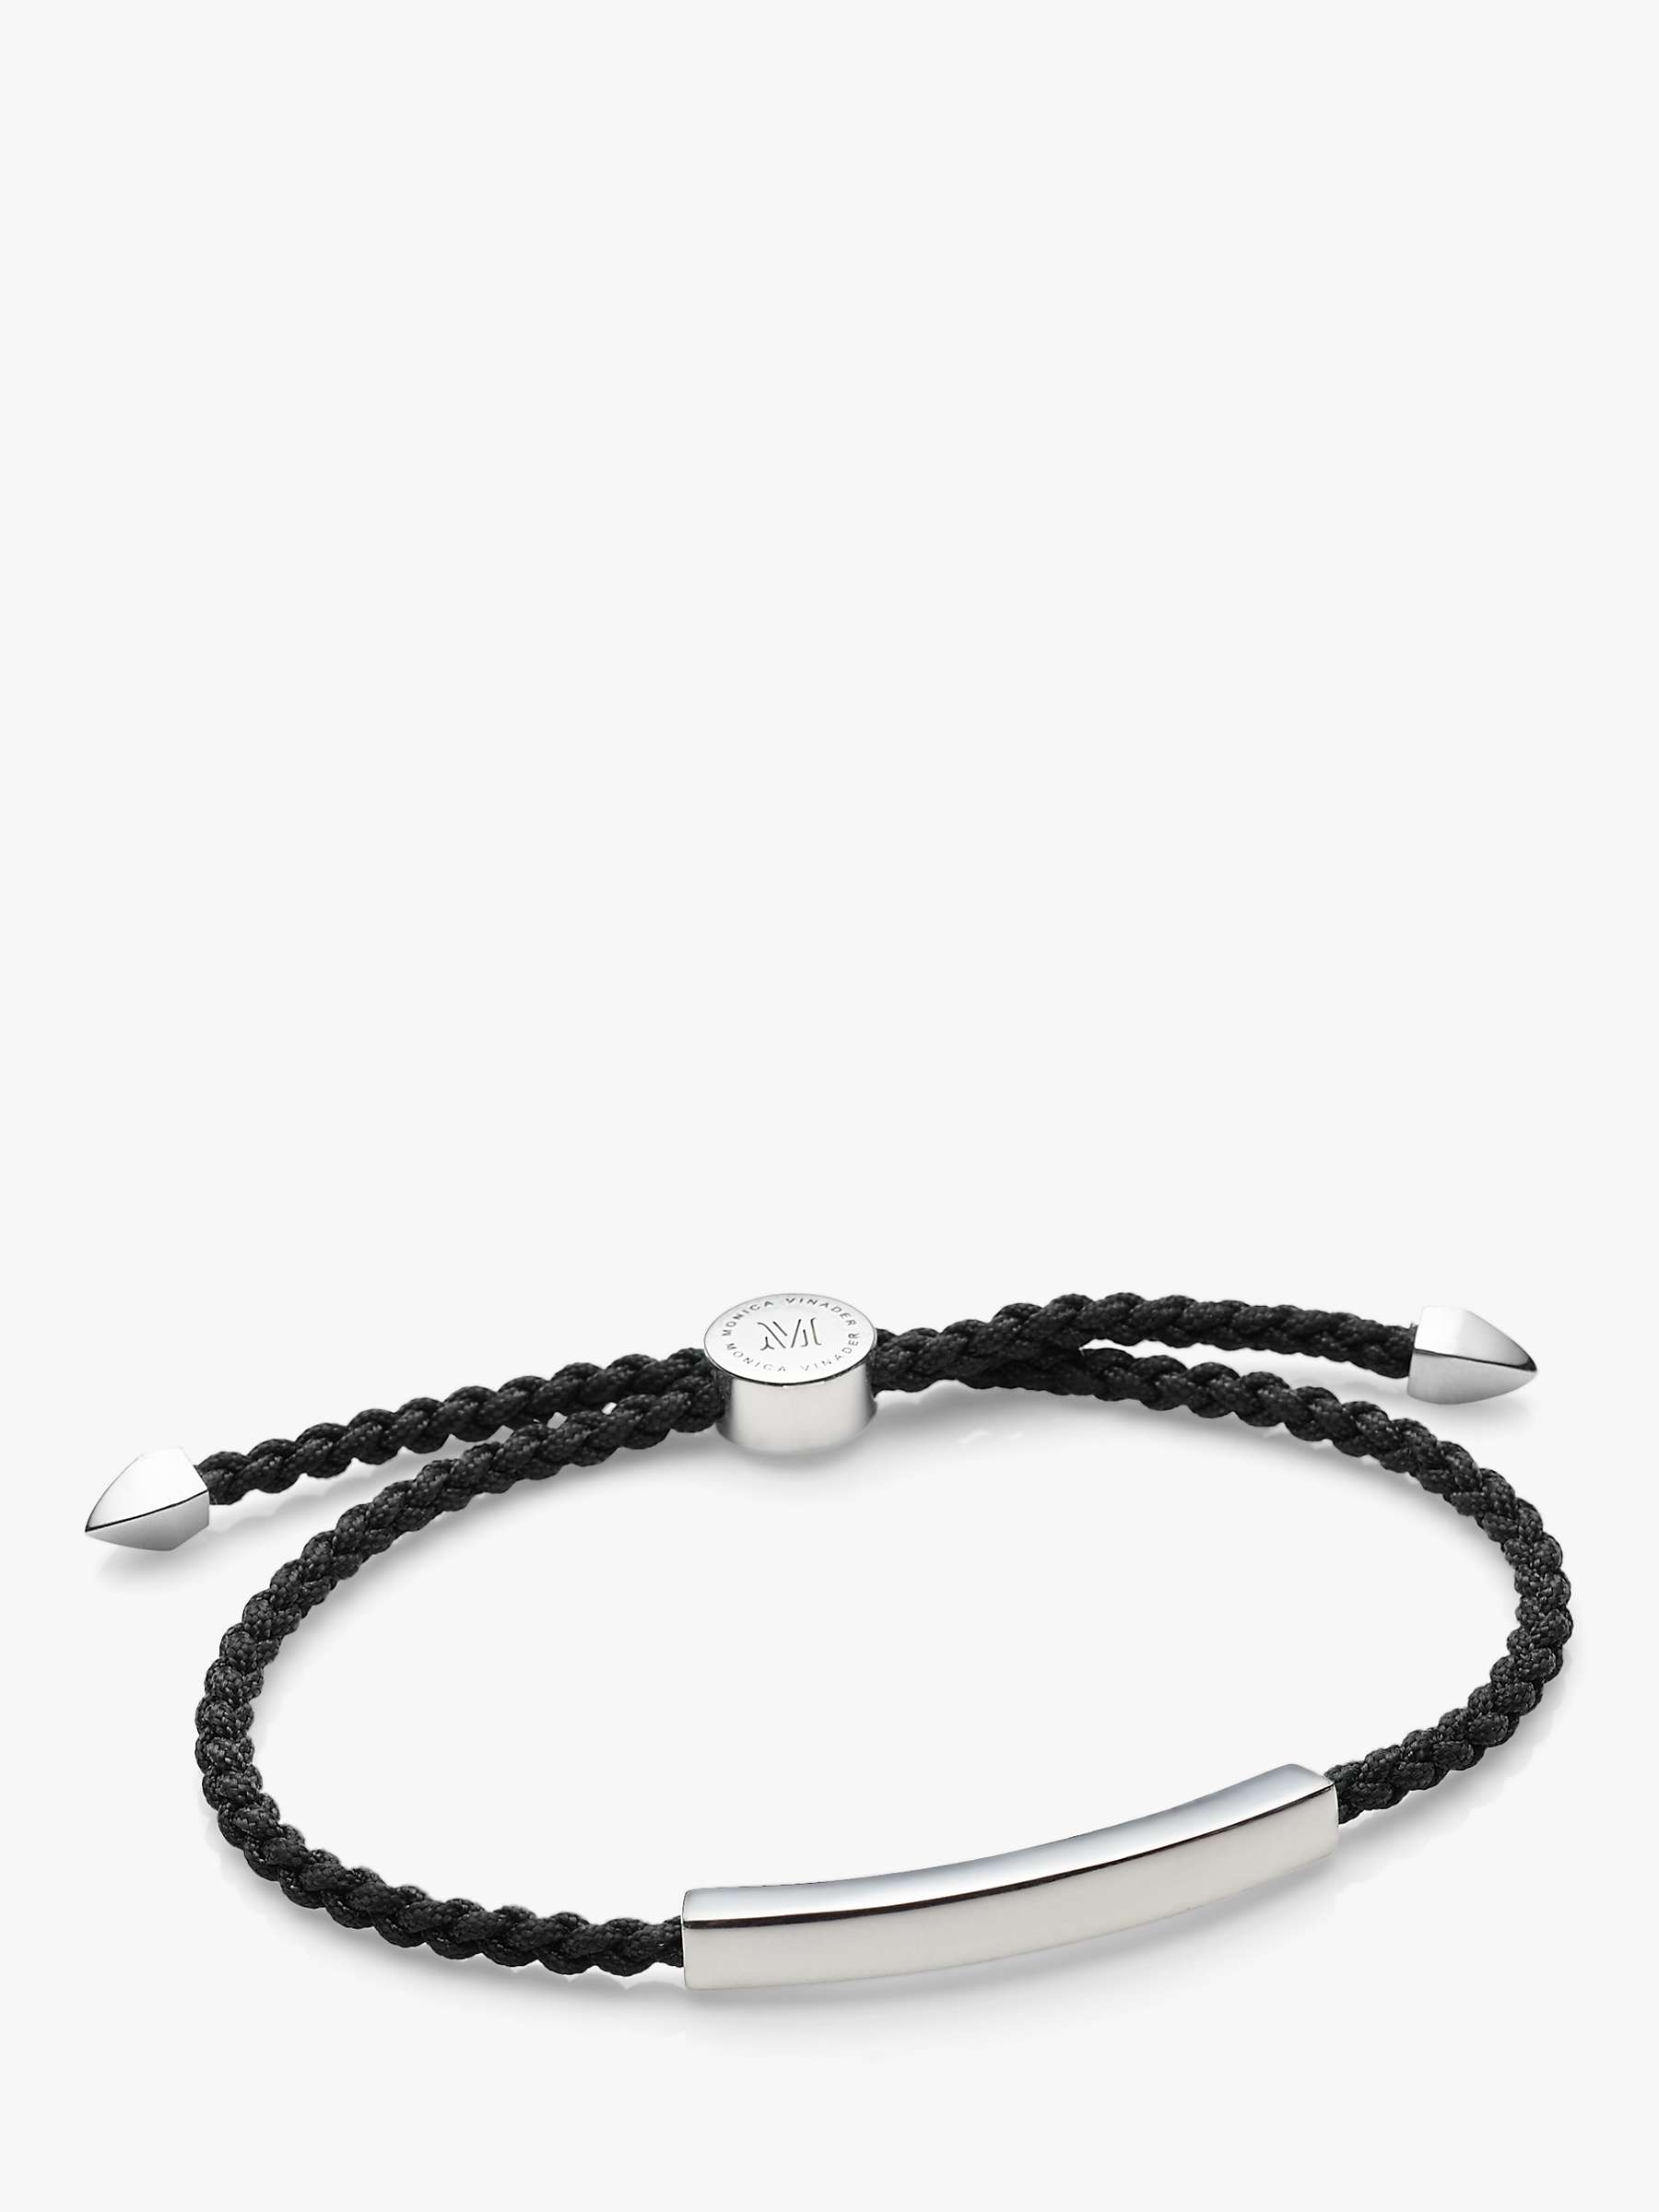 Buy Monica Vinader Men's Linear Friendship Bracelet, Silver/Black Online at johnlewis.com